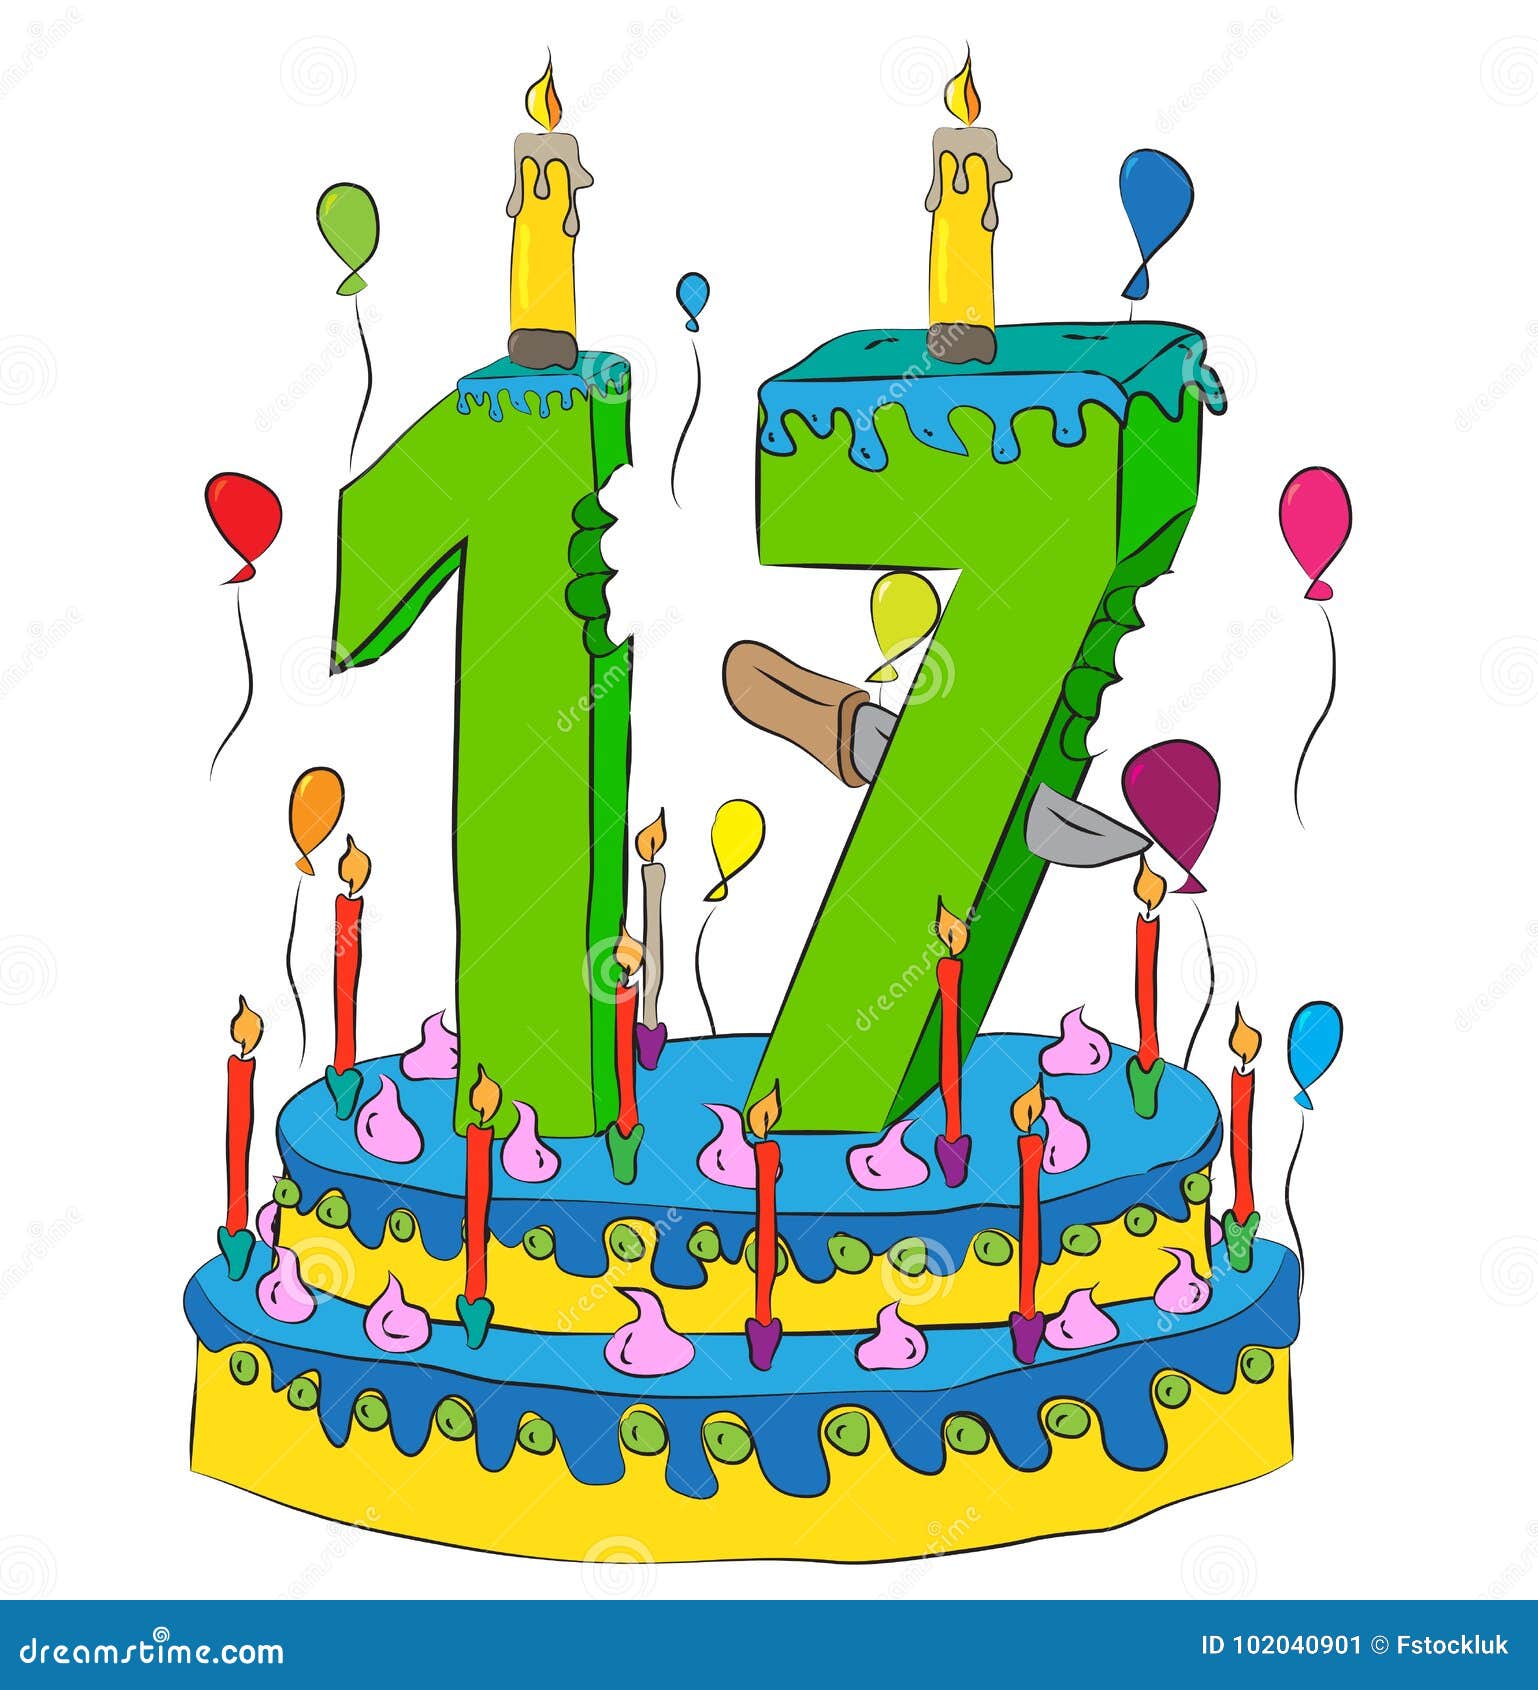 Поздравление с днем рождения мальчика 17 лет. Торт с 17 свечками. Торт со свечами 17 лет. С 17 летием. Тортик с 17 свечками на фоне.